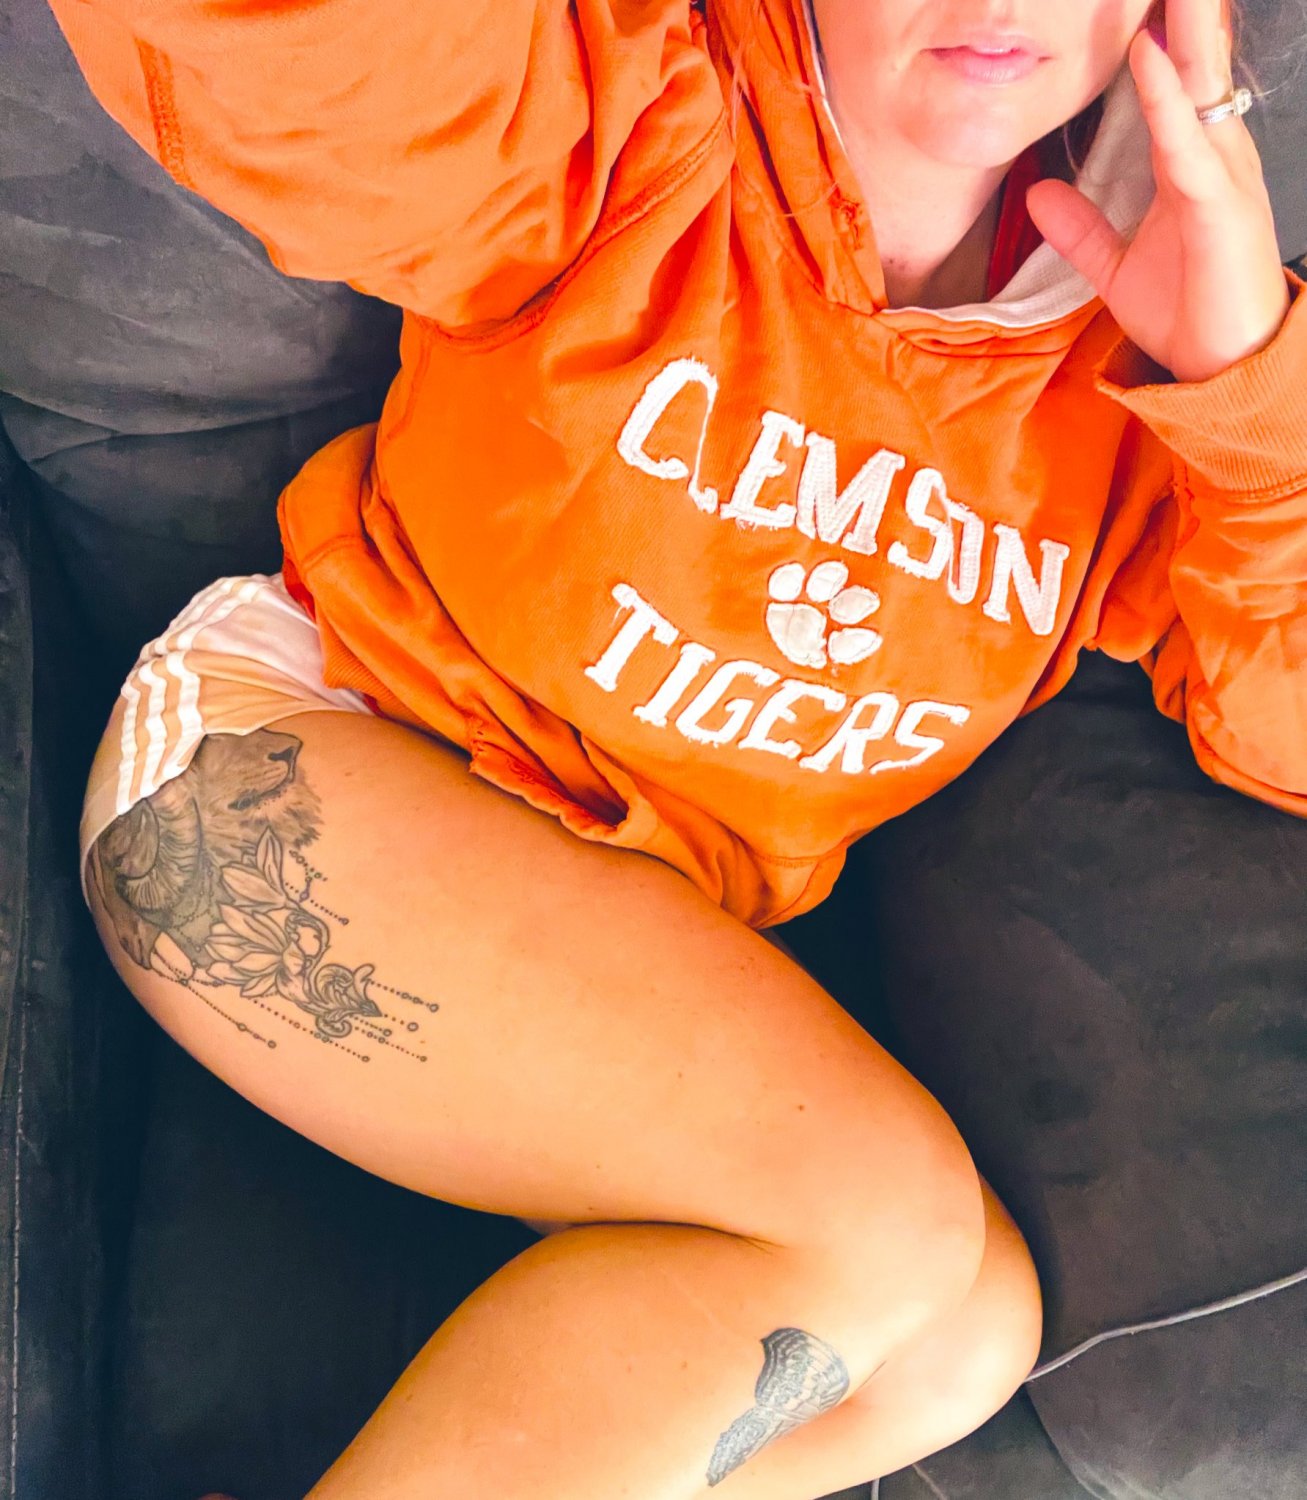 post#702 - South Carolinas Clemson Tigers - Porn photo